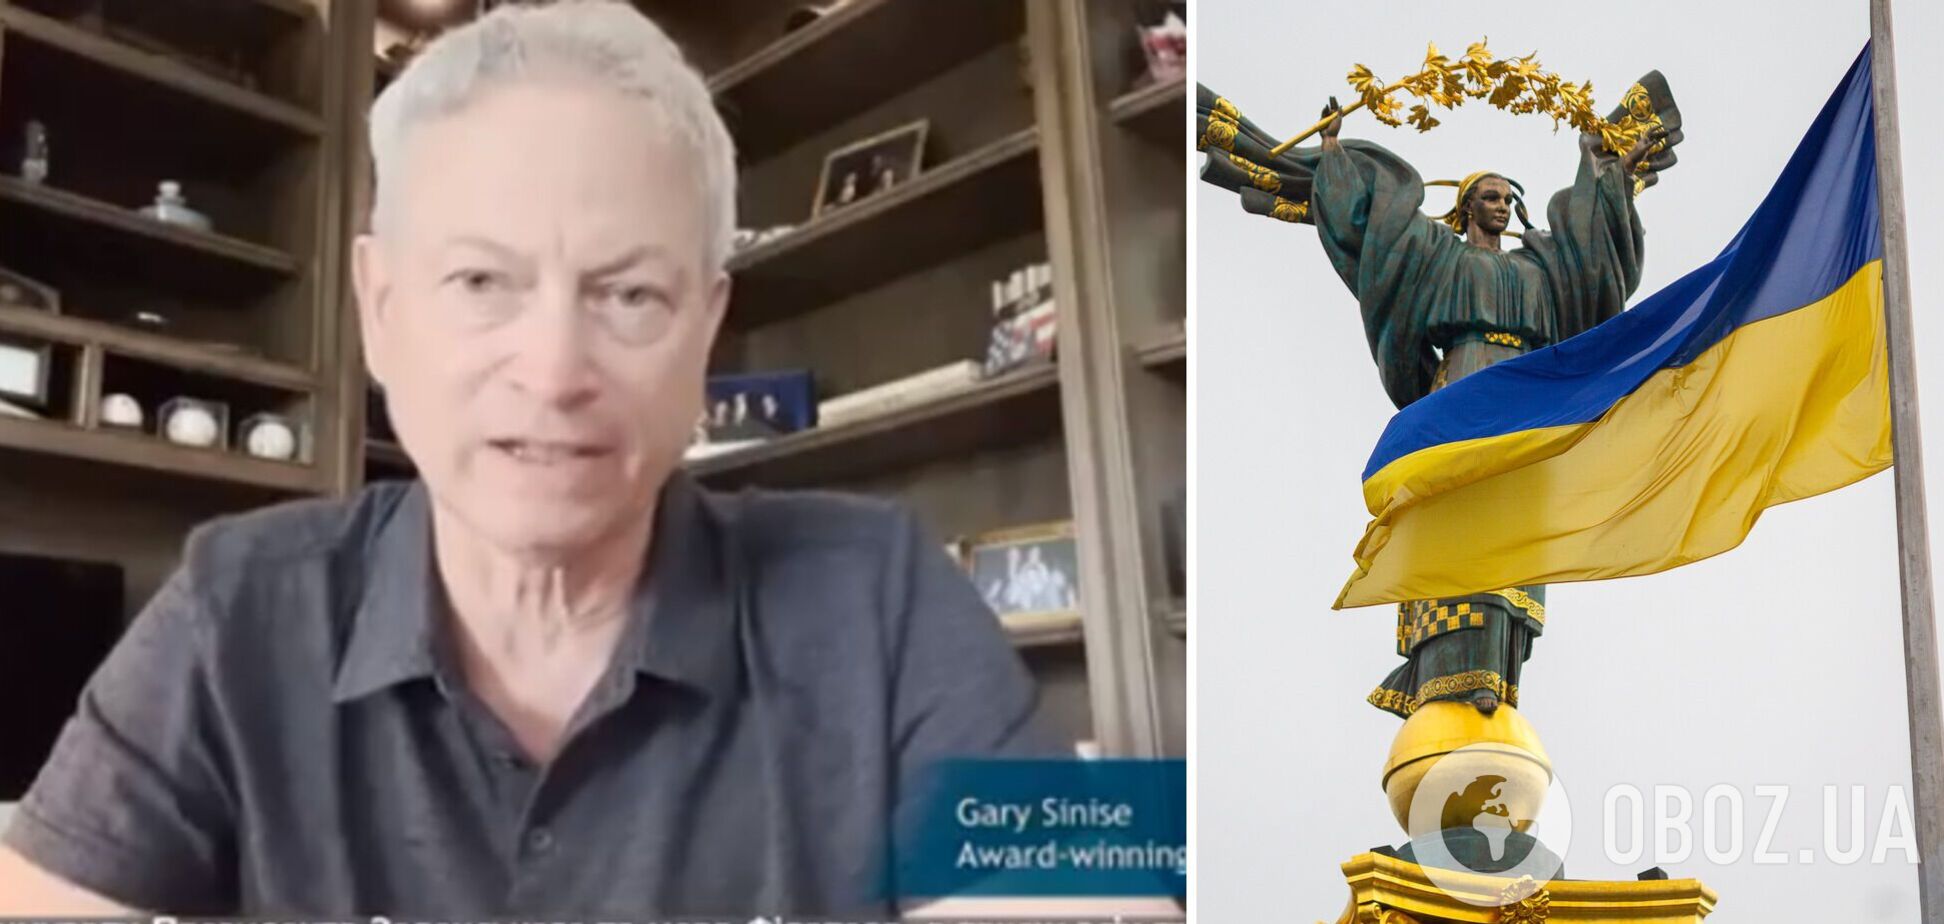 Допомога друзів по всьому світу: Гері Сініз записав відеозвернення на підтримку України